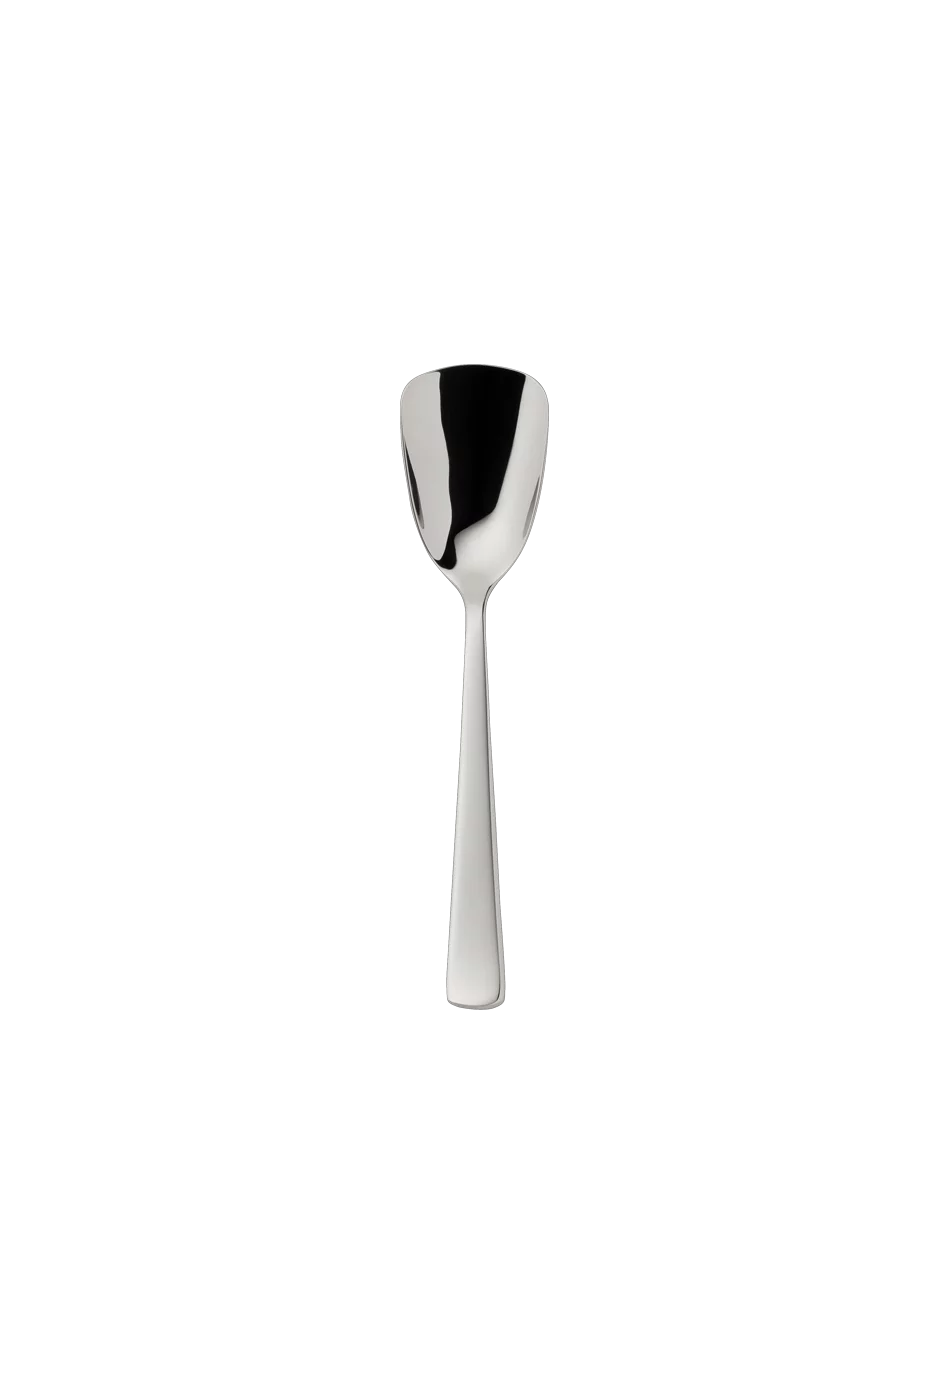 Atlantic Brillant Sugar Spoon (18/8 stainless steel)